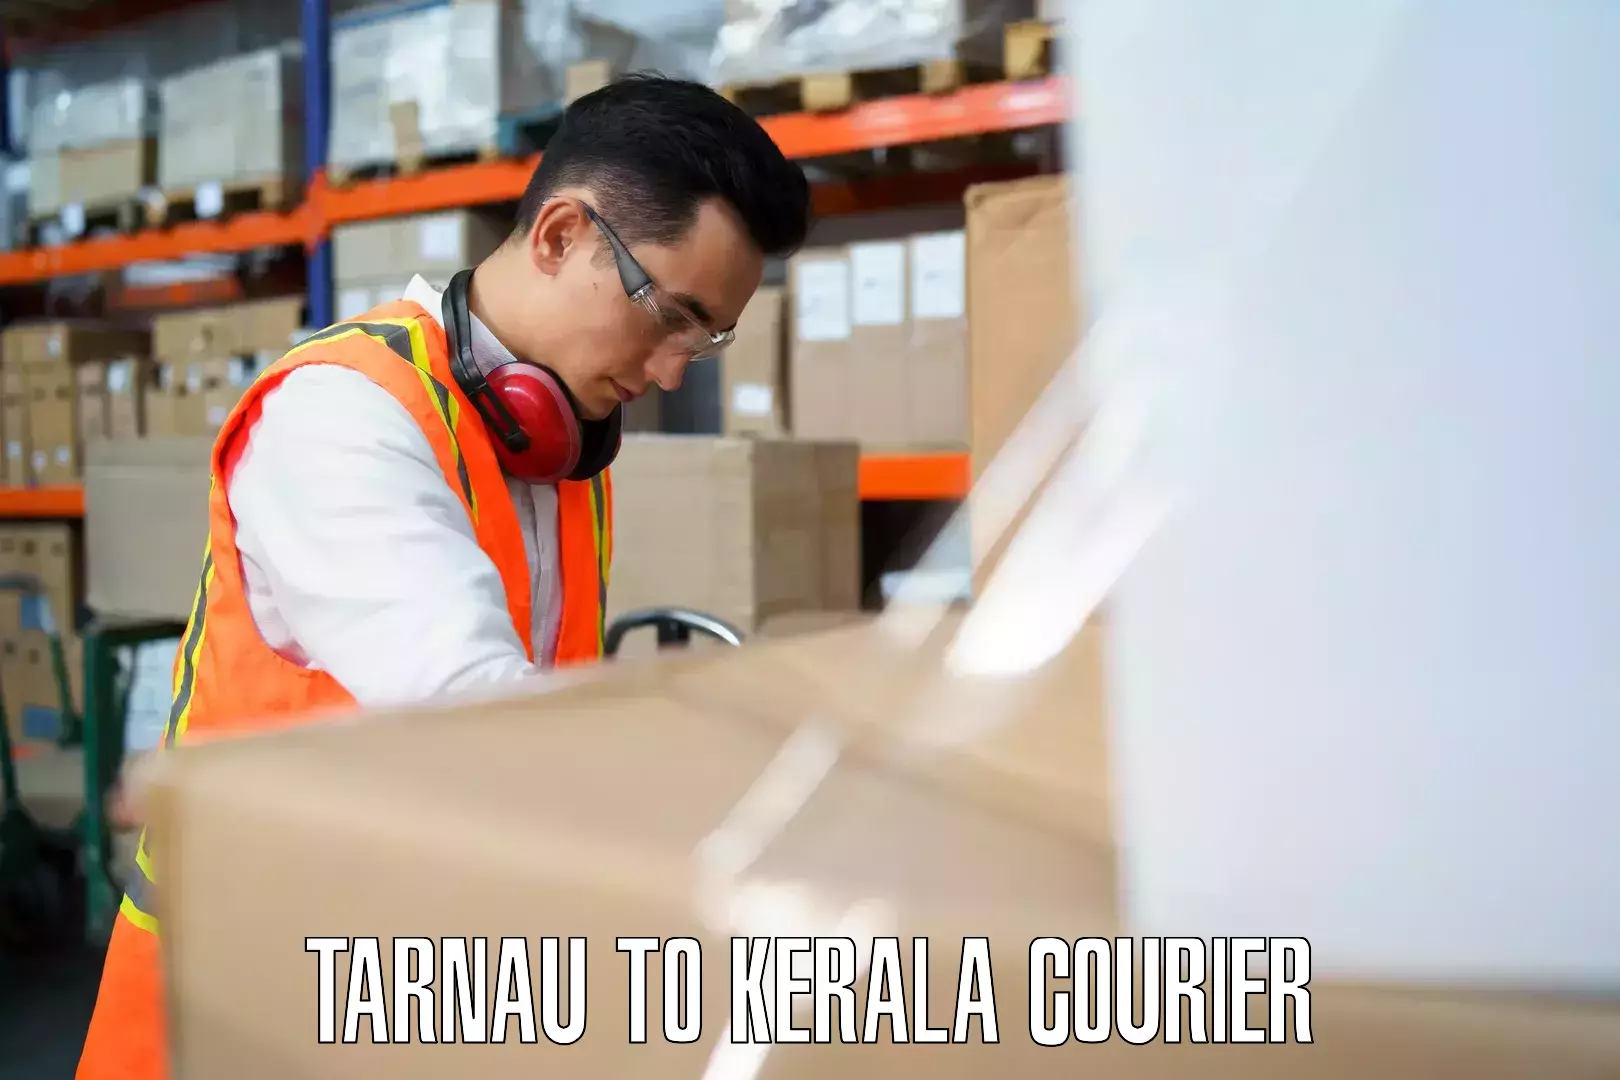 Baggage courier strategy Tarnau to IIIT Kottayam